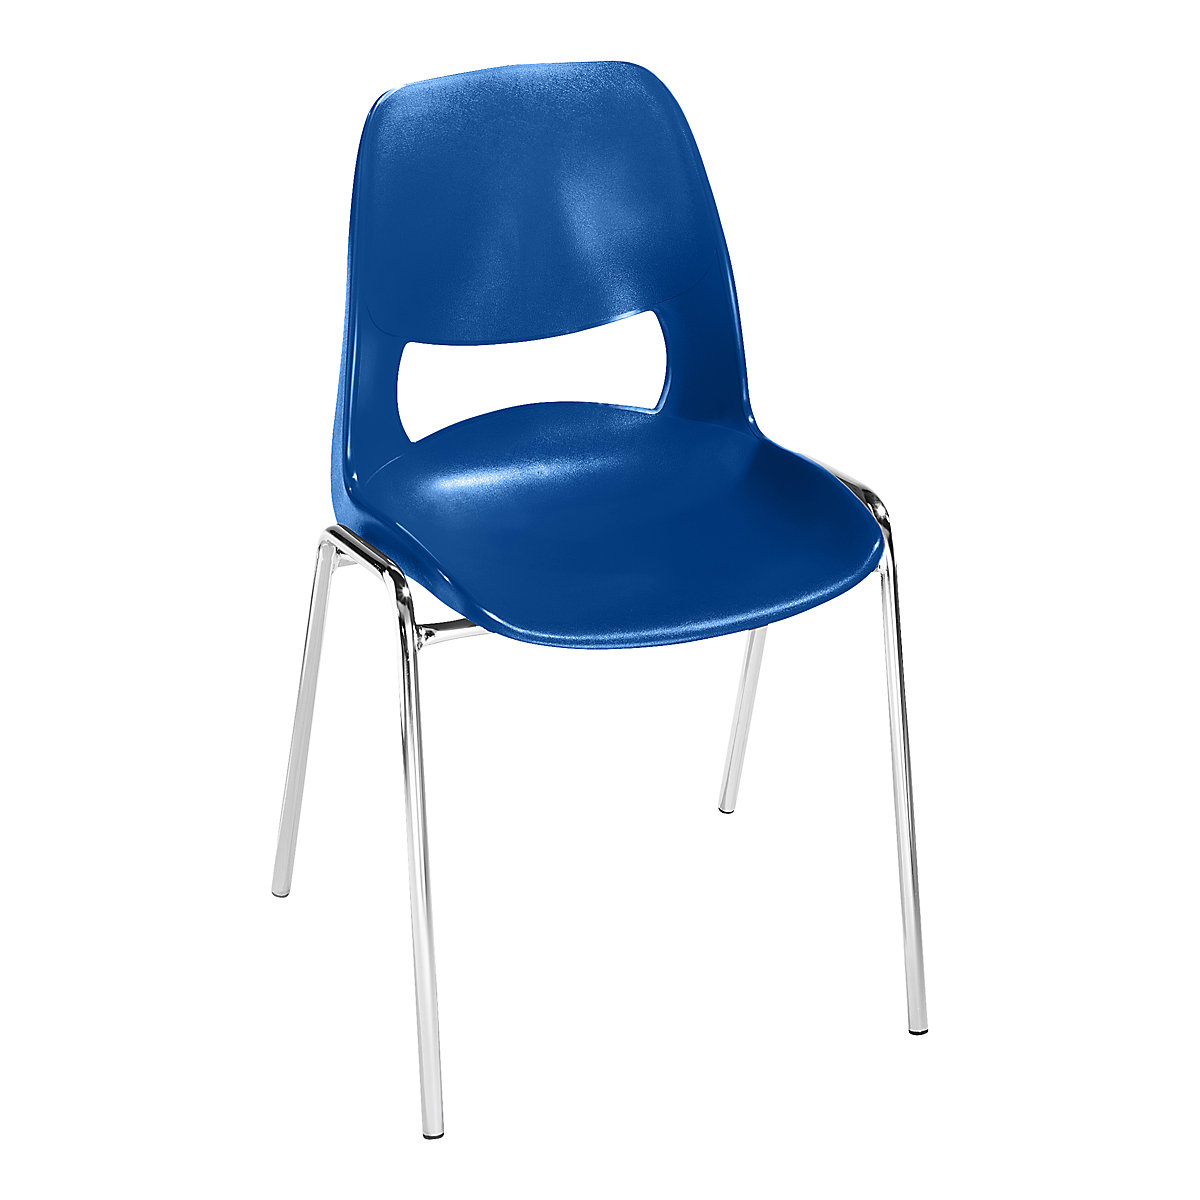 Chaise à coque en polypropylène, sans rembourrage, bleu, lot de 4-7